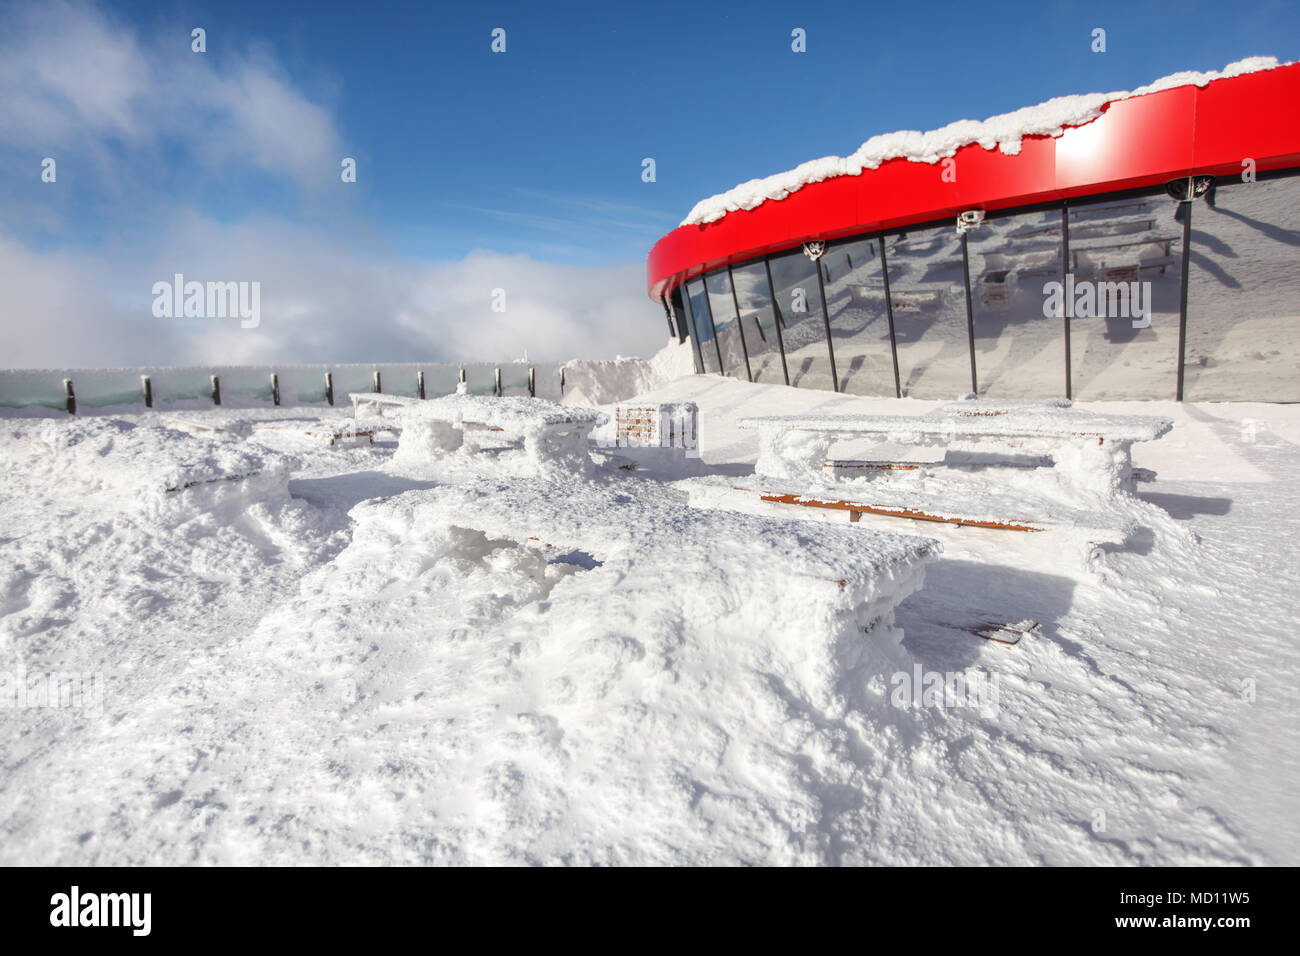 Restaurant Terrasse im Winter. Starker Schneefall verursacht Holzbänken und Tischen sind kaum unter Schneelast sichtbar. Stockfoto